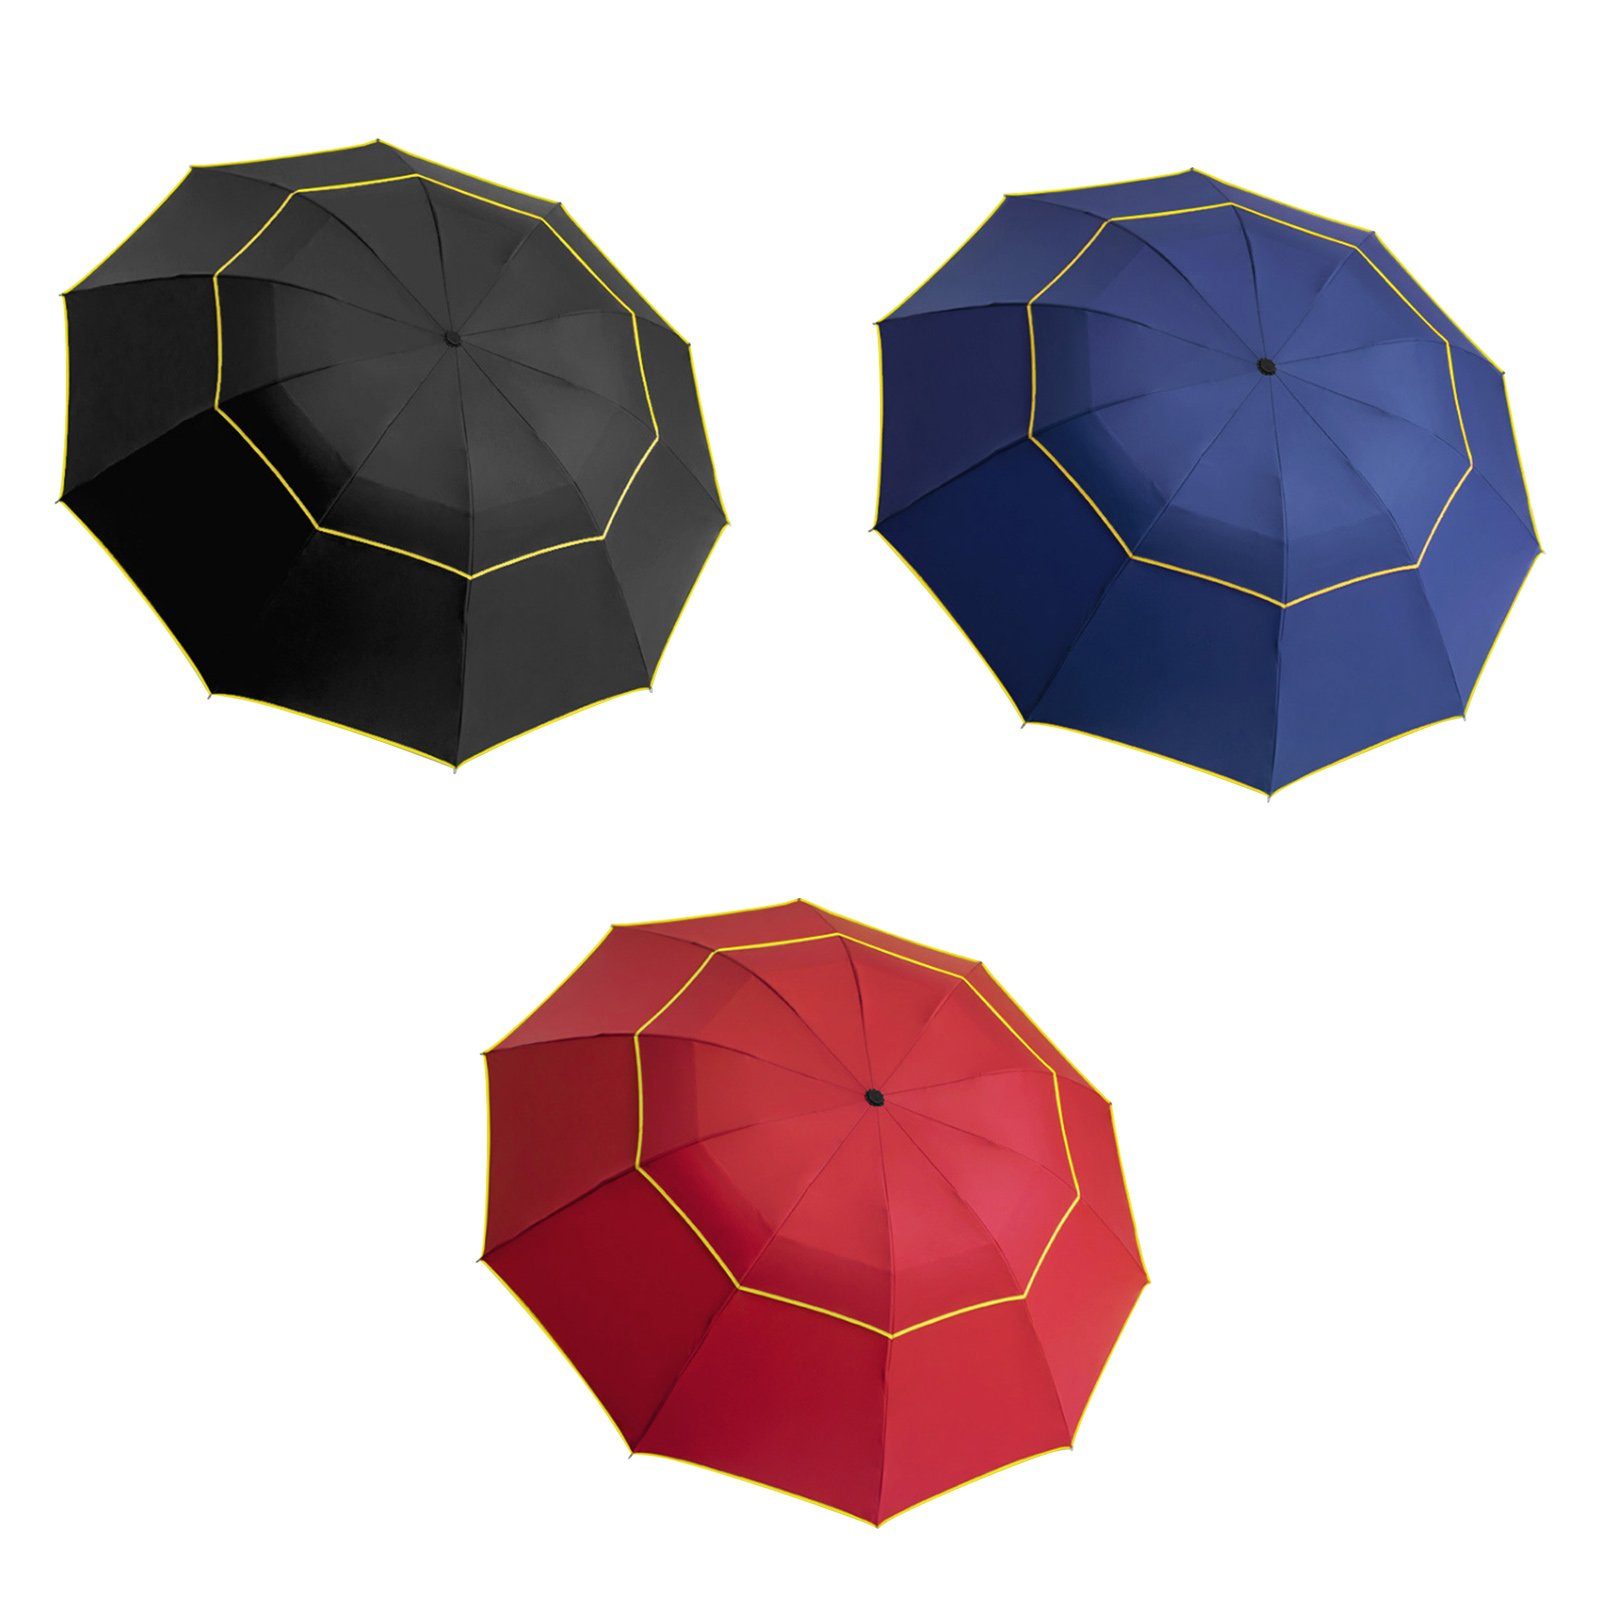 Tragbarer Reiseschirm – regenfester Regenschirm, robuster und